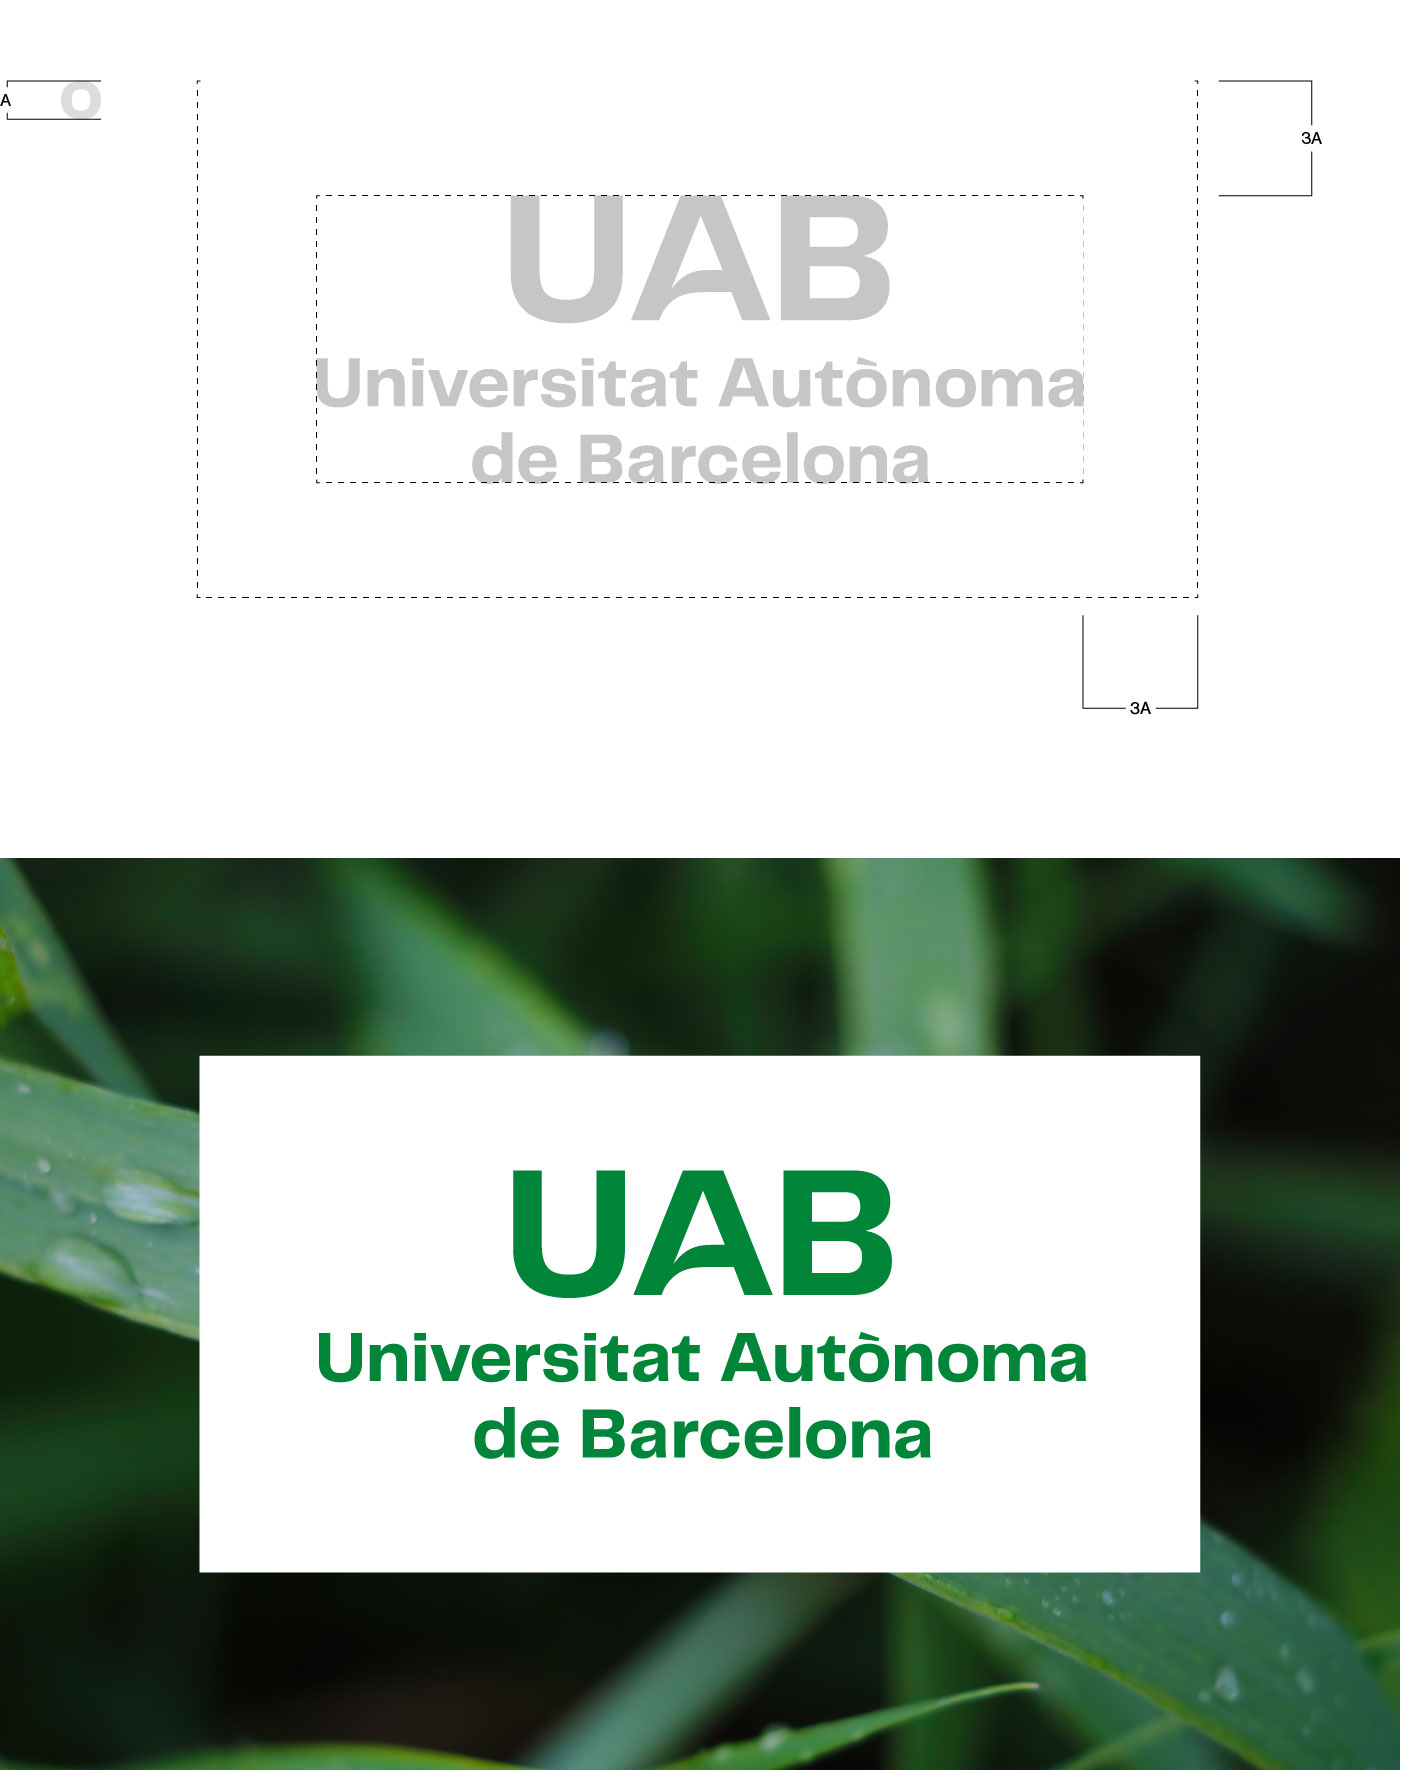 Marges de seguretat i àrea de reserva d'aplicació del logotip UAB.